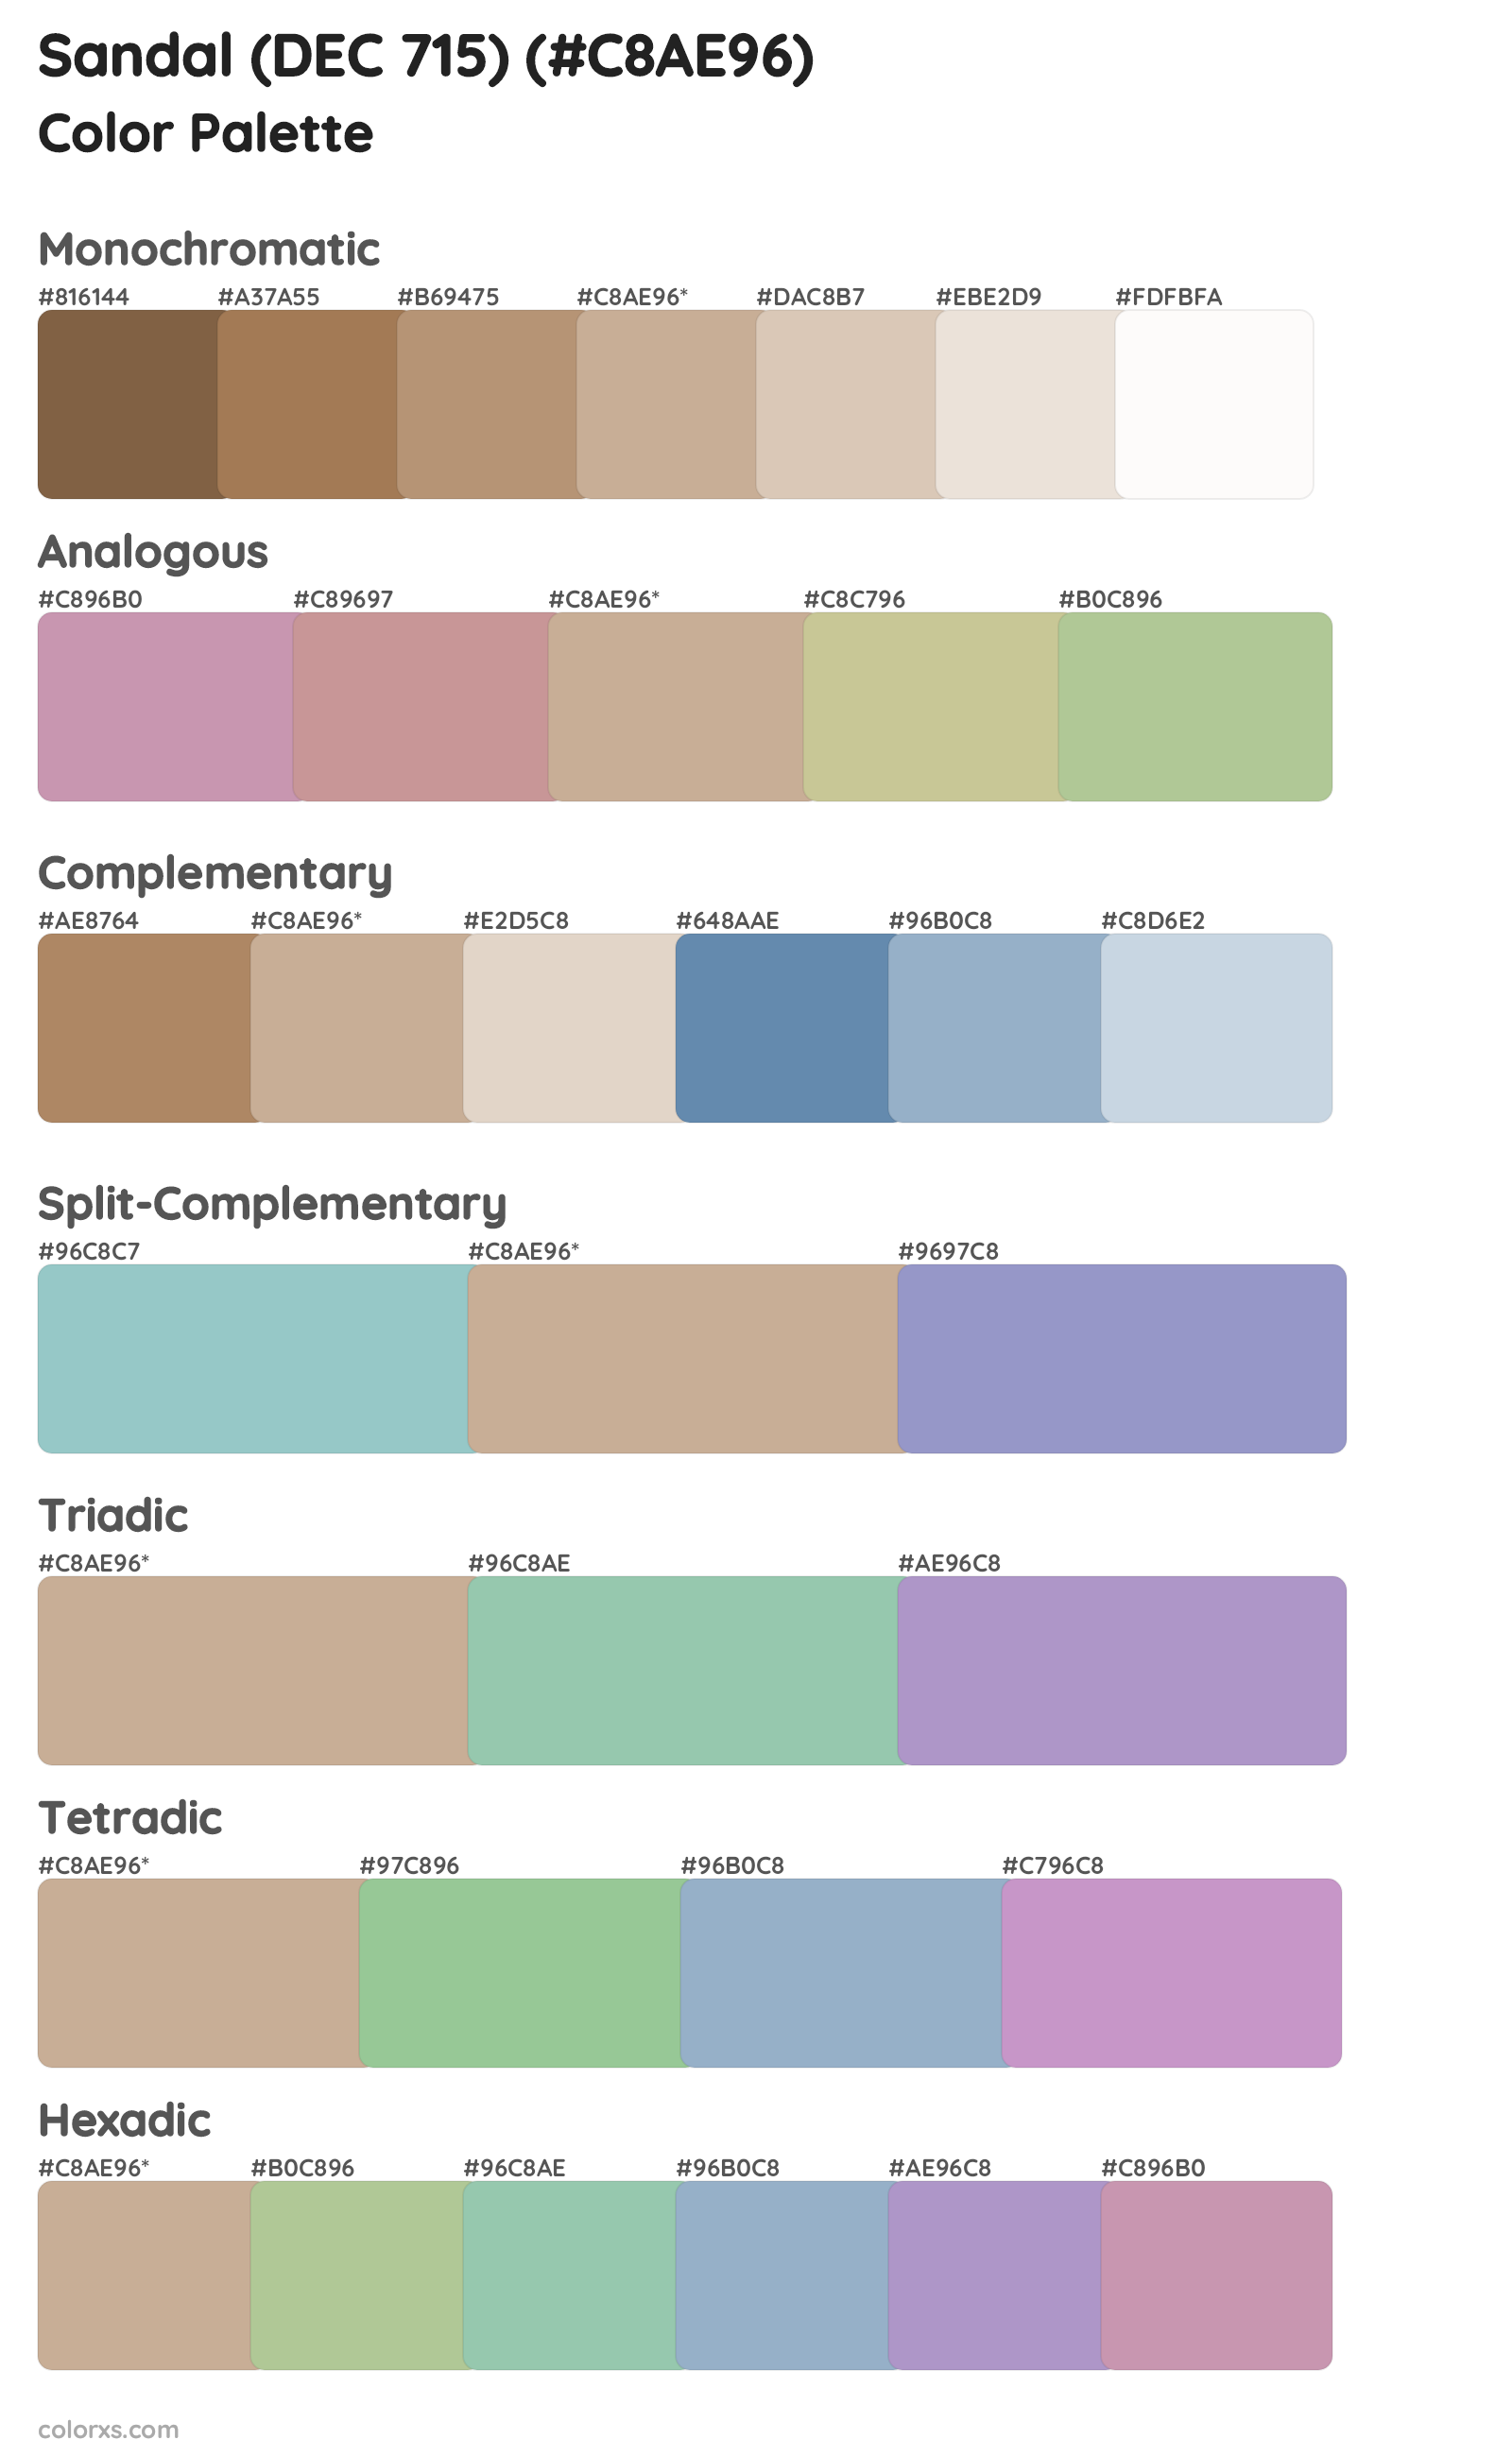 Sandal (DEC 715) Color Scheme Palettes